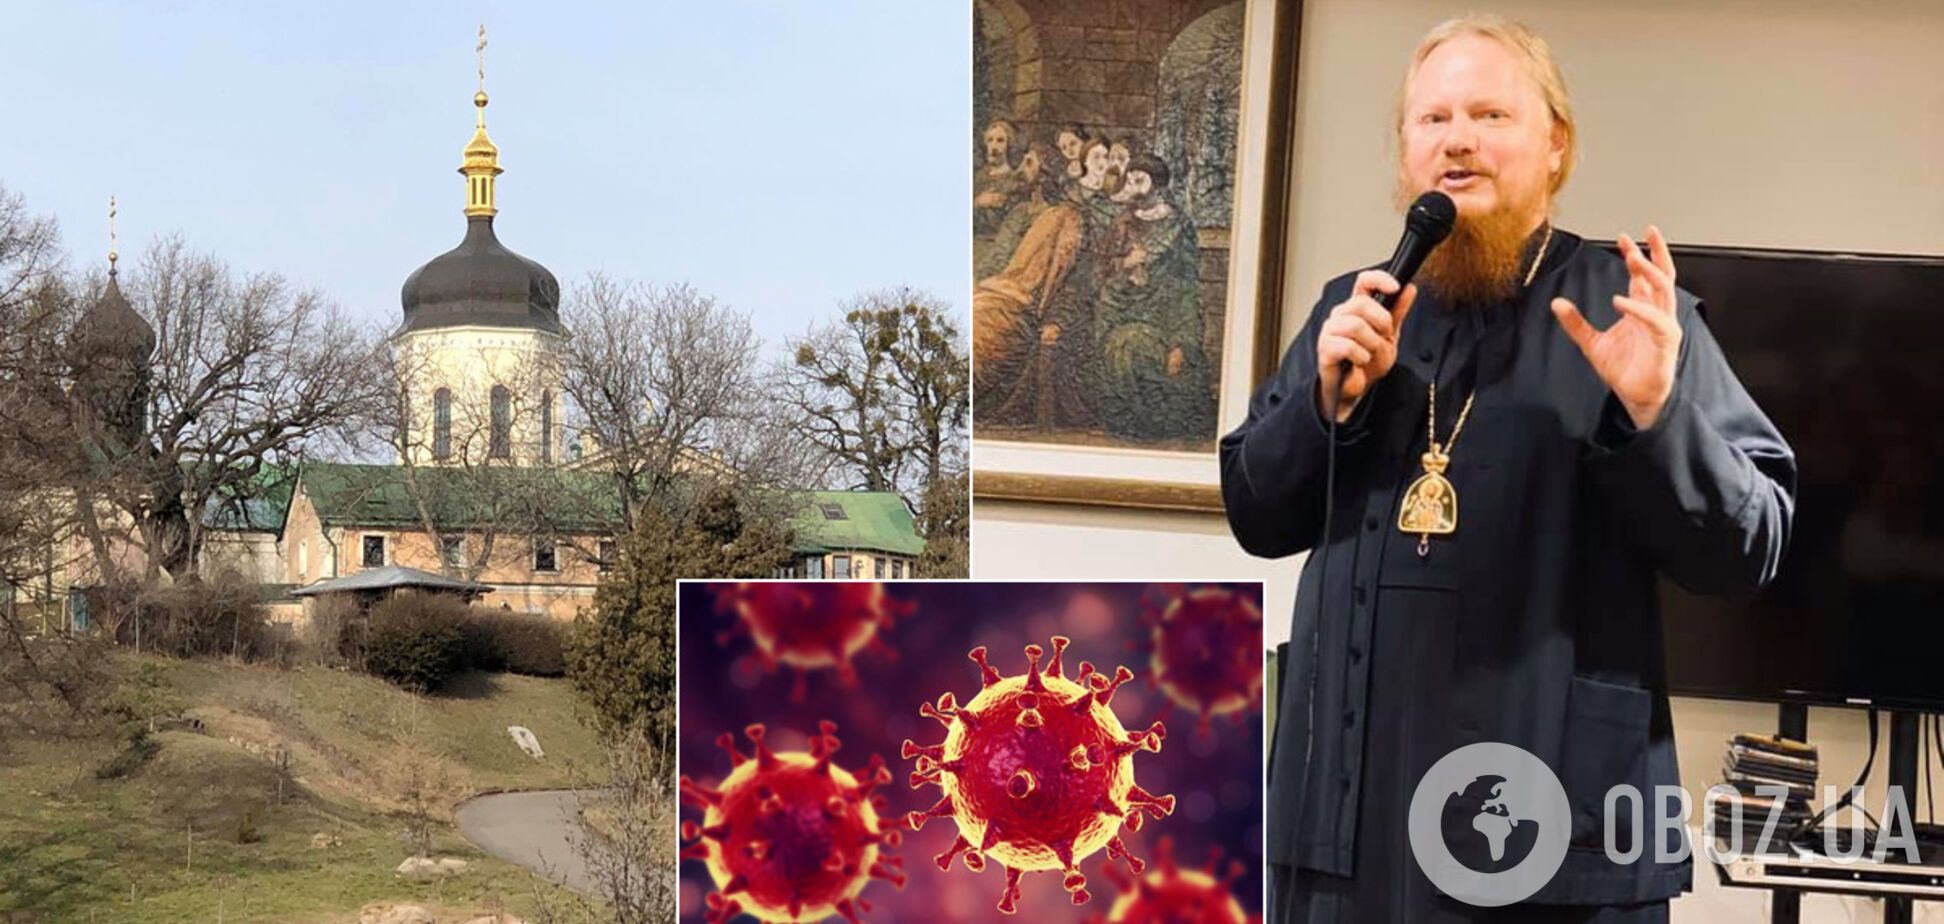 Архиепископ УПЦ МП, который призывал игнорировать карантин, попал в больницу с коронавирусом. Иллюстрация